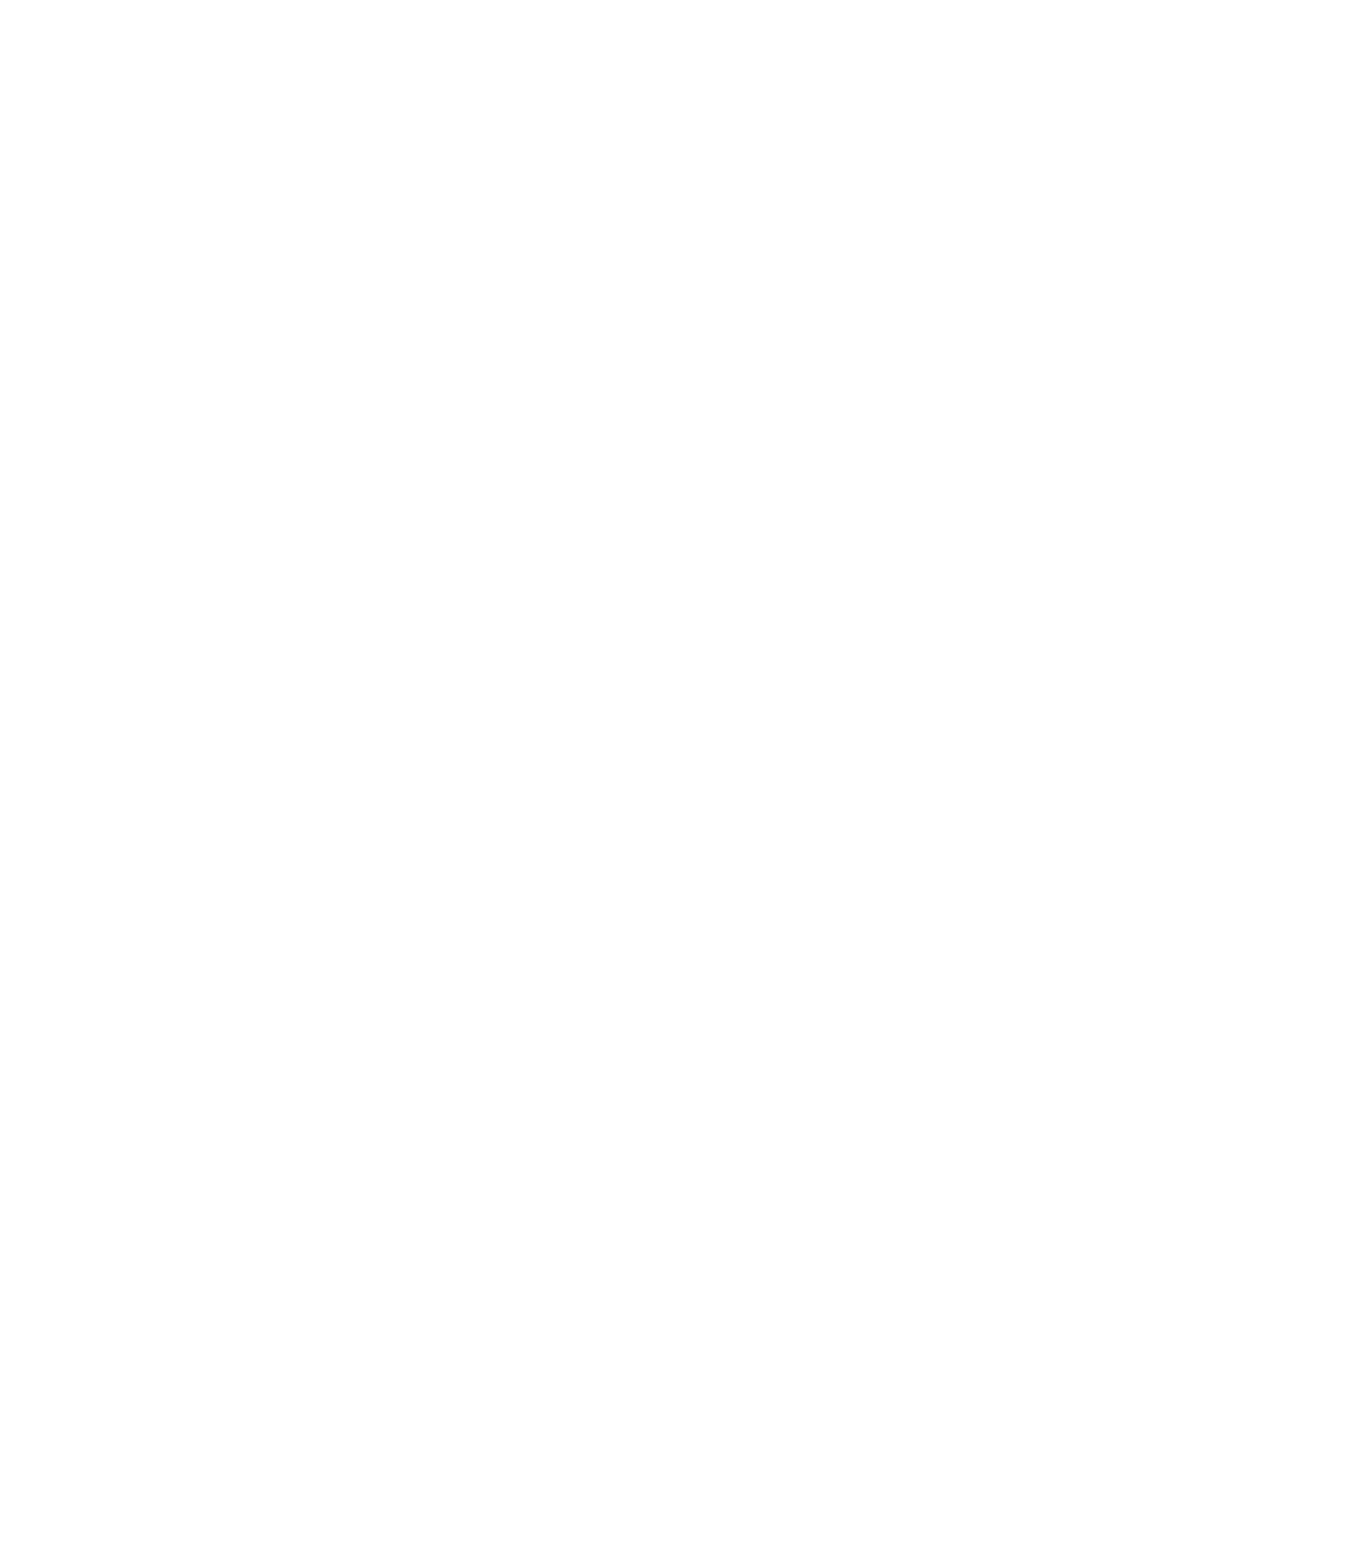 Voyager Digital logo for dark backgrounds (transparent PNG)